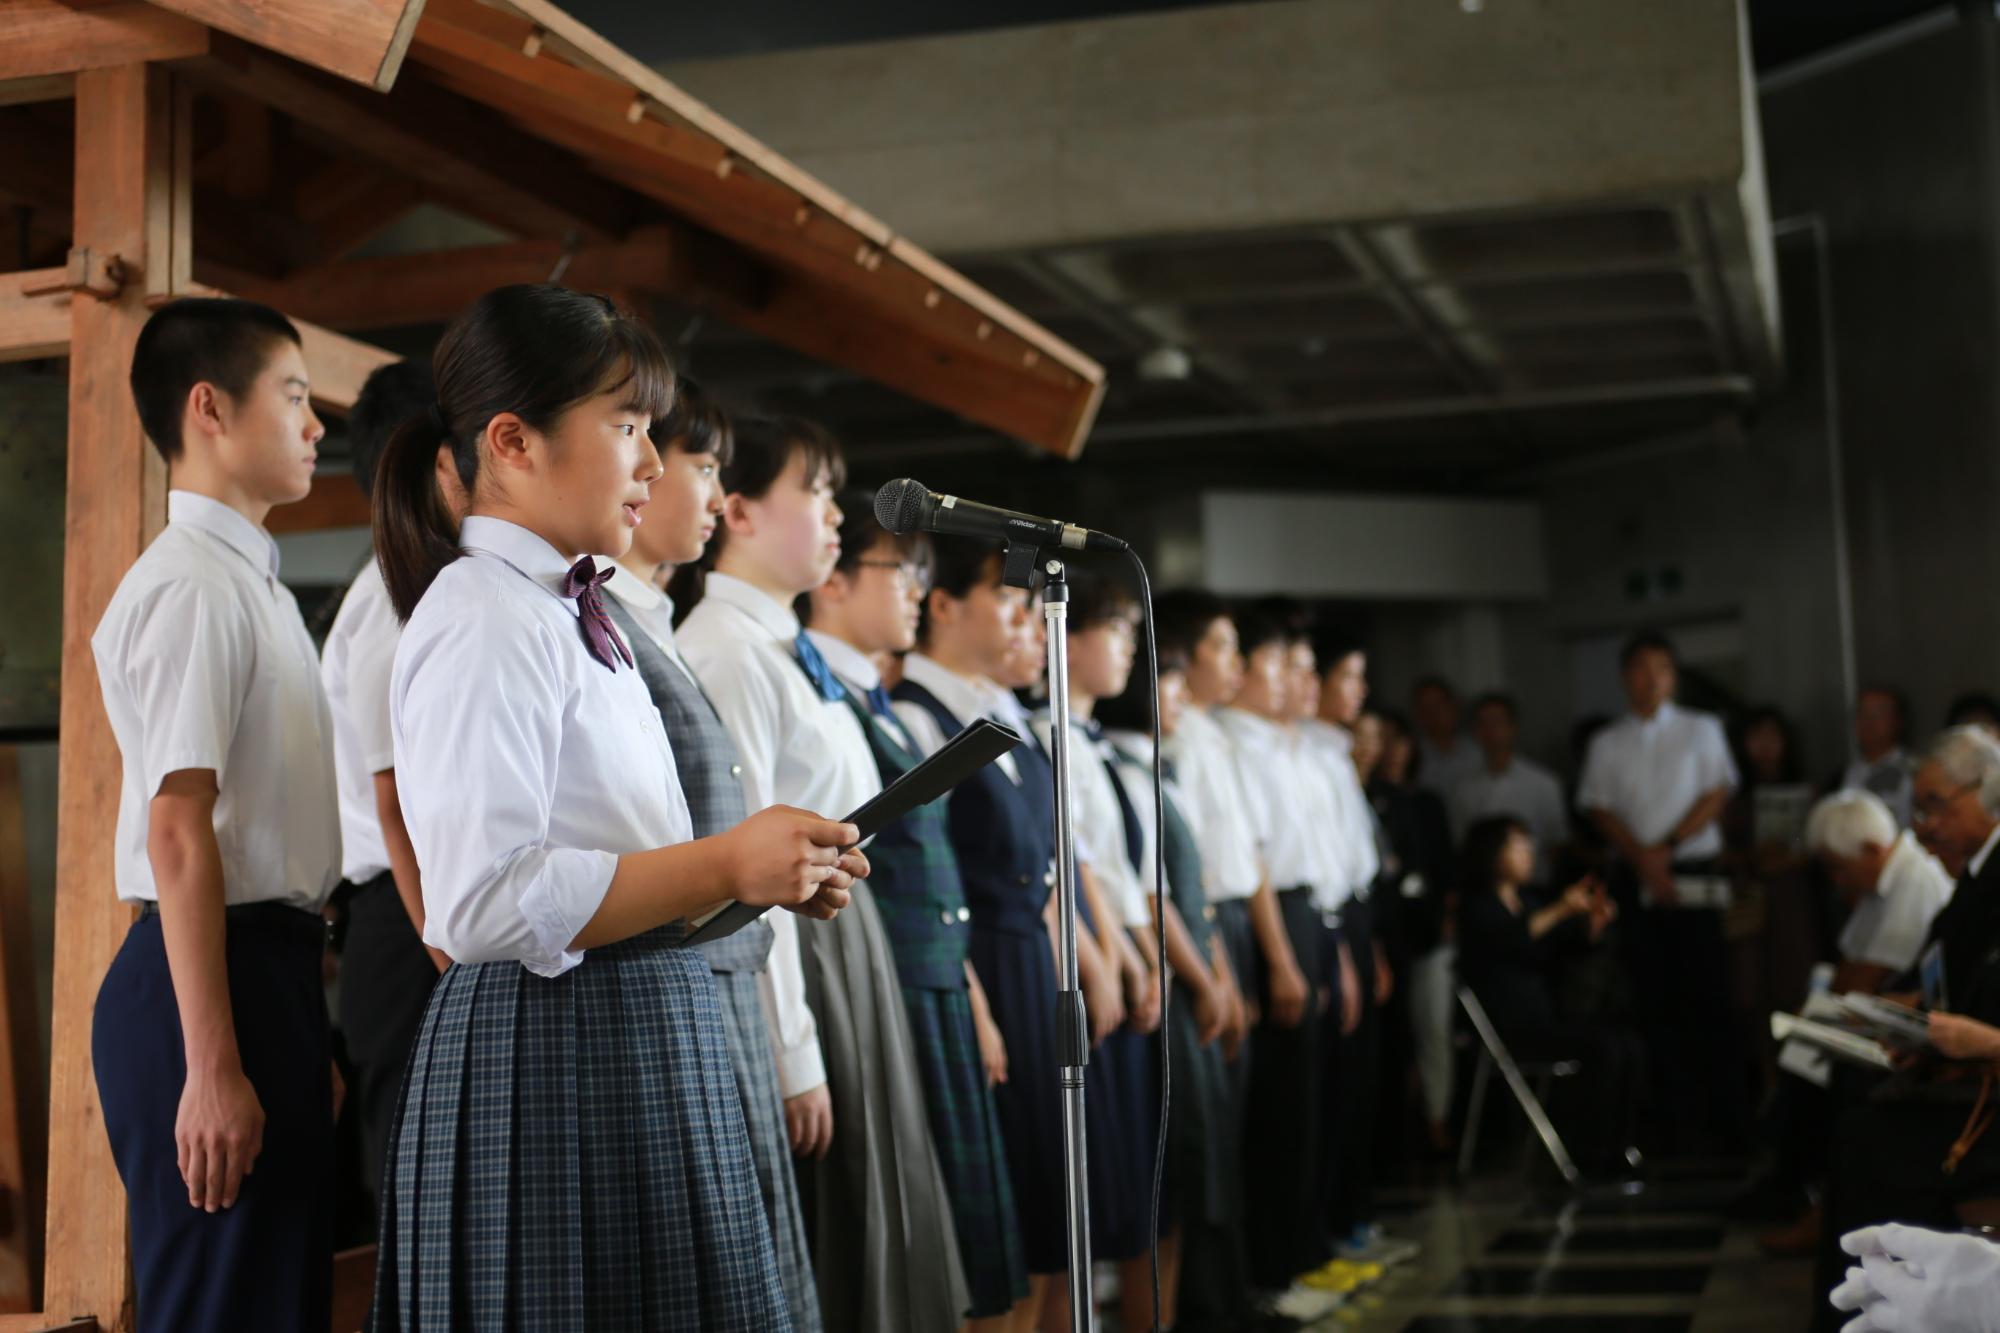 スタンドマイクの前に立つ女子学生と、並んでいる男女学生を横から写した写真